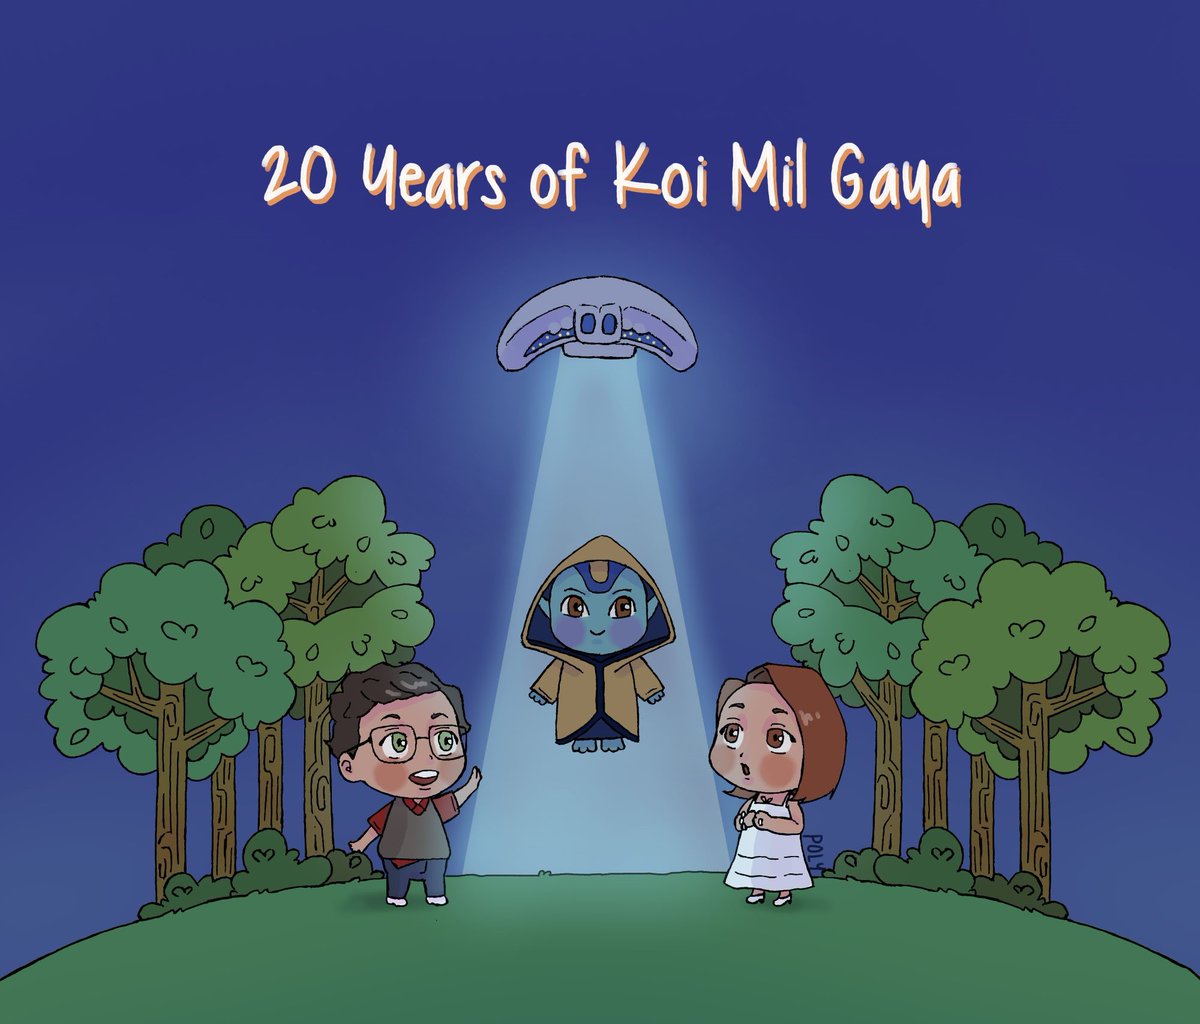 20 years of my favorite movie ❤ #20yearsofkoimilgaya #KoiMilGaya